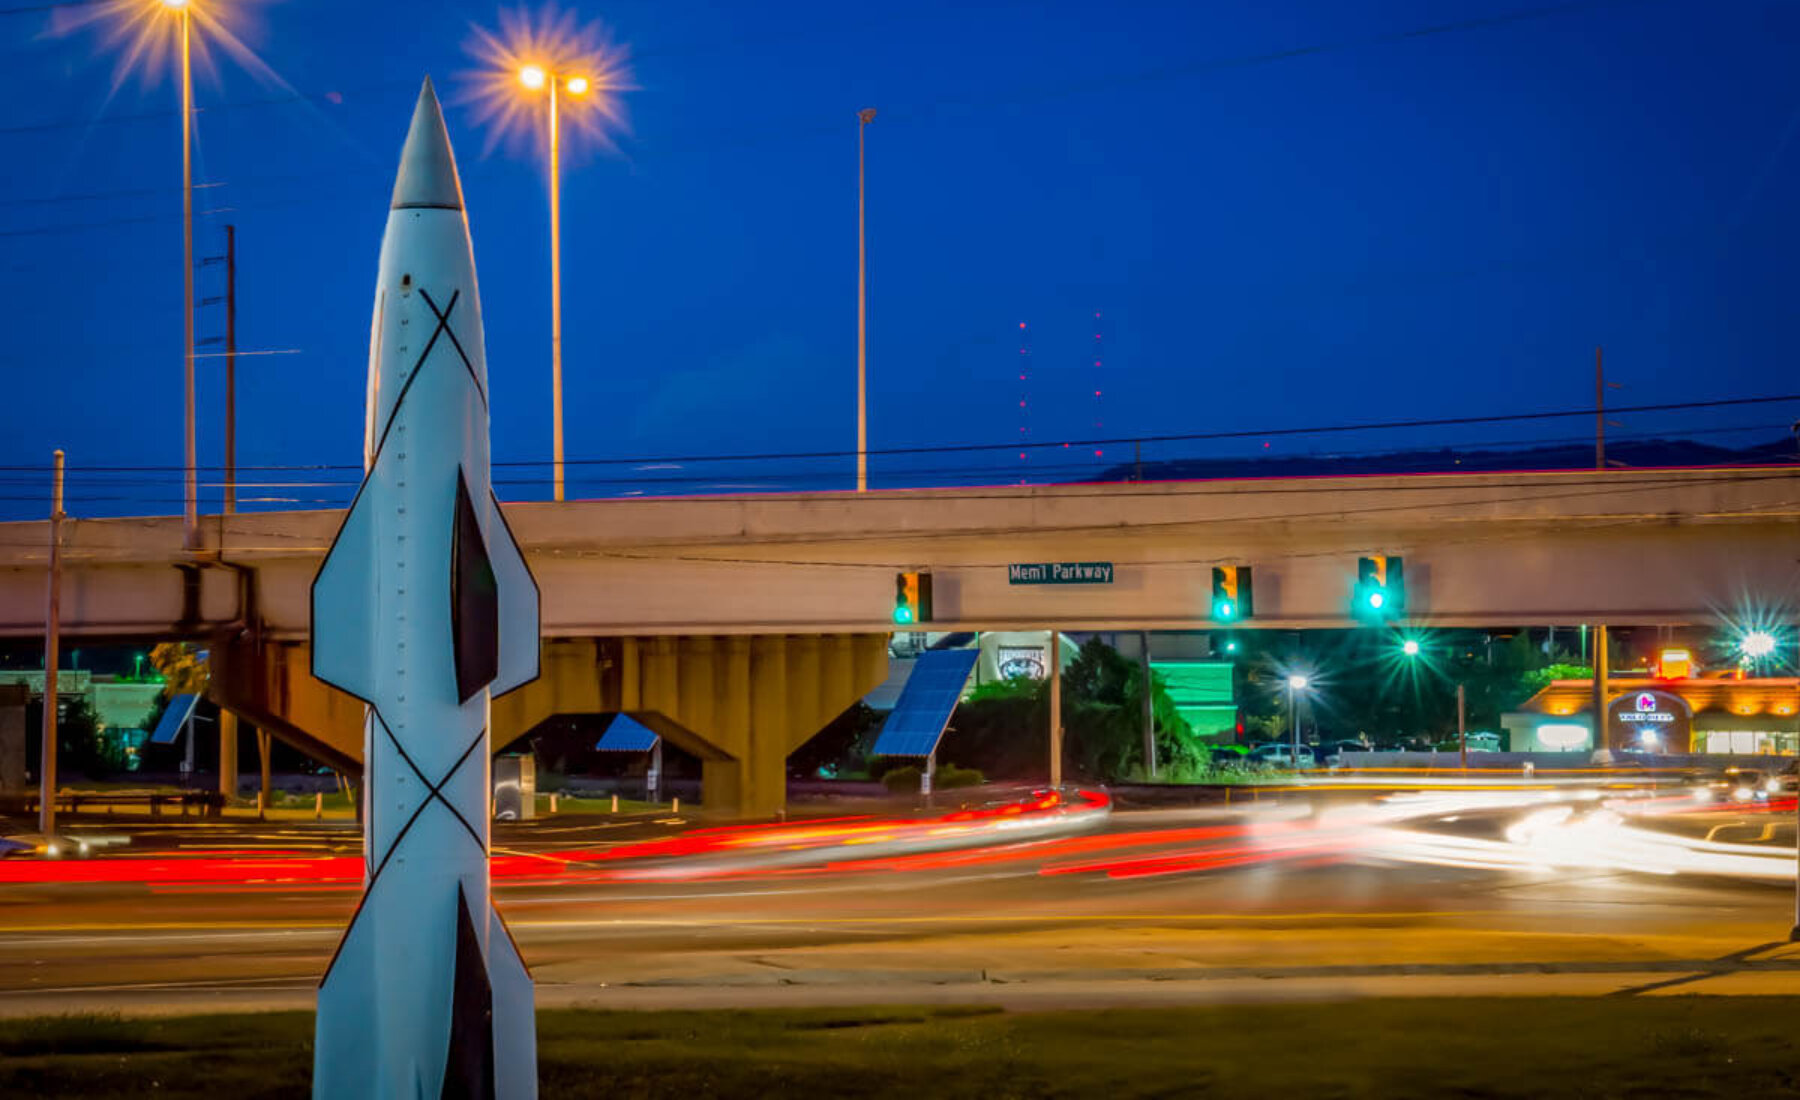 Hermes Missile – Huntsville Alabama